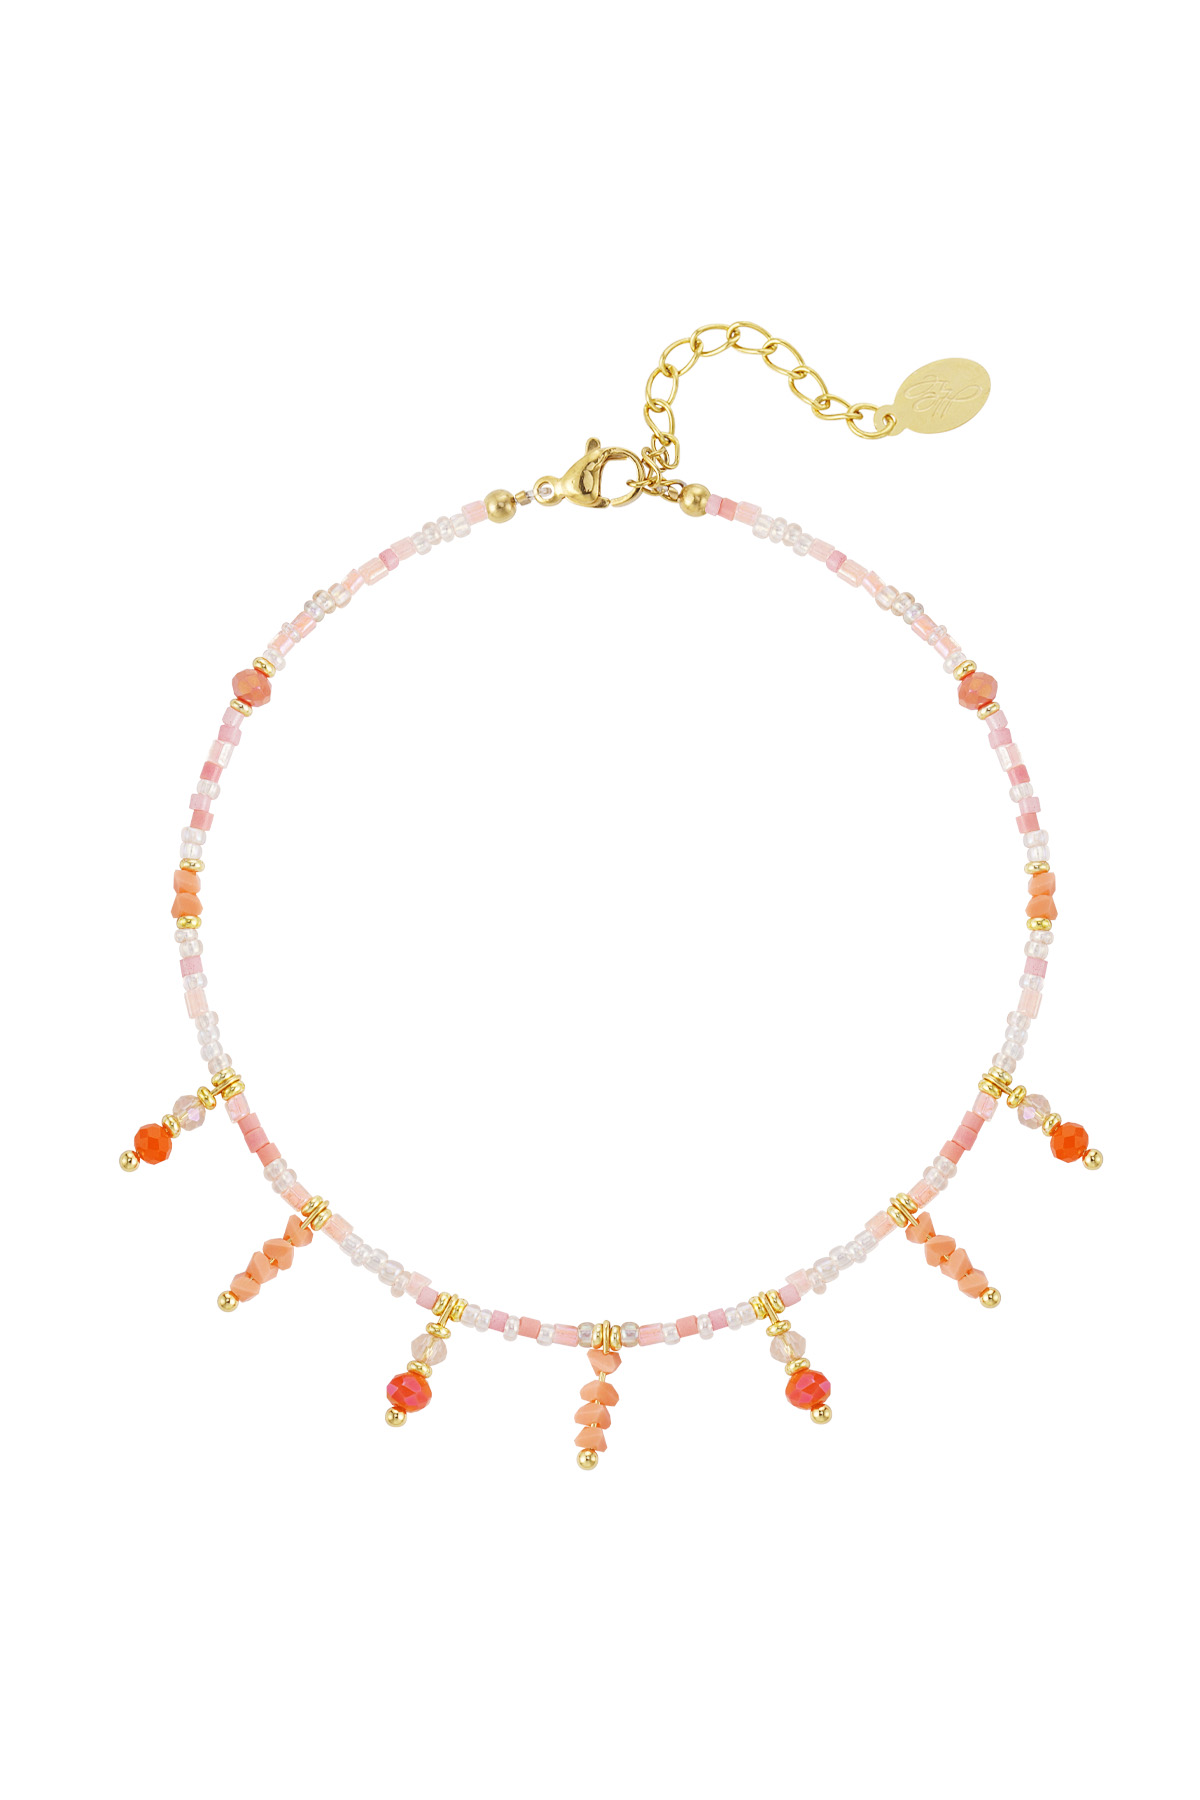 Perlenarmband mit Perlenanhängern - orange/gold h5 